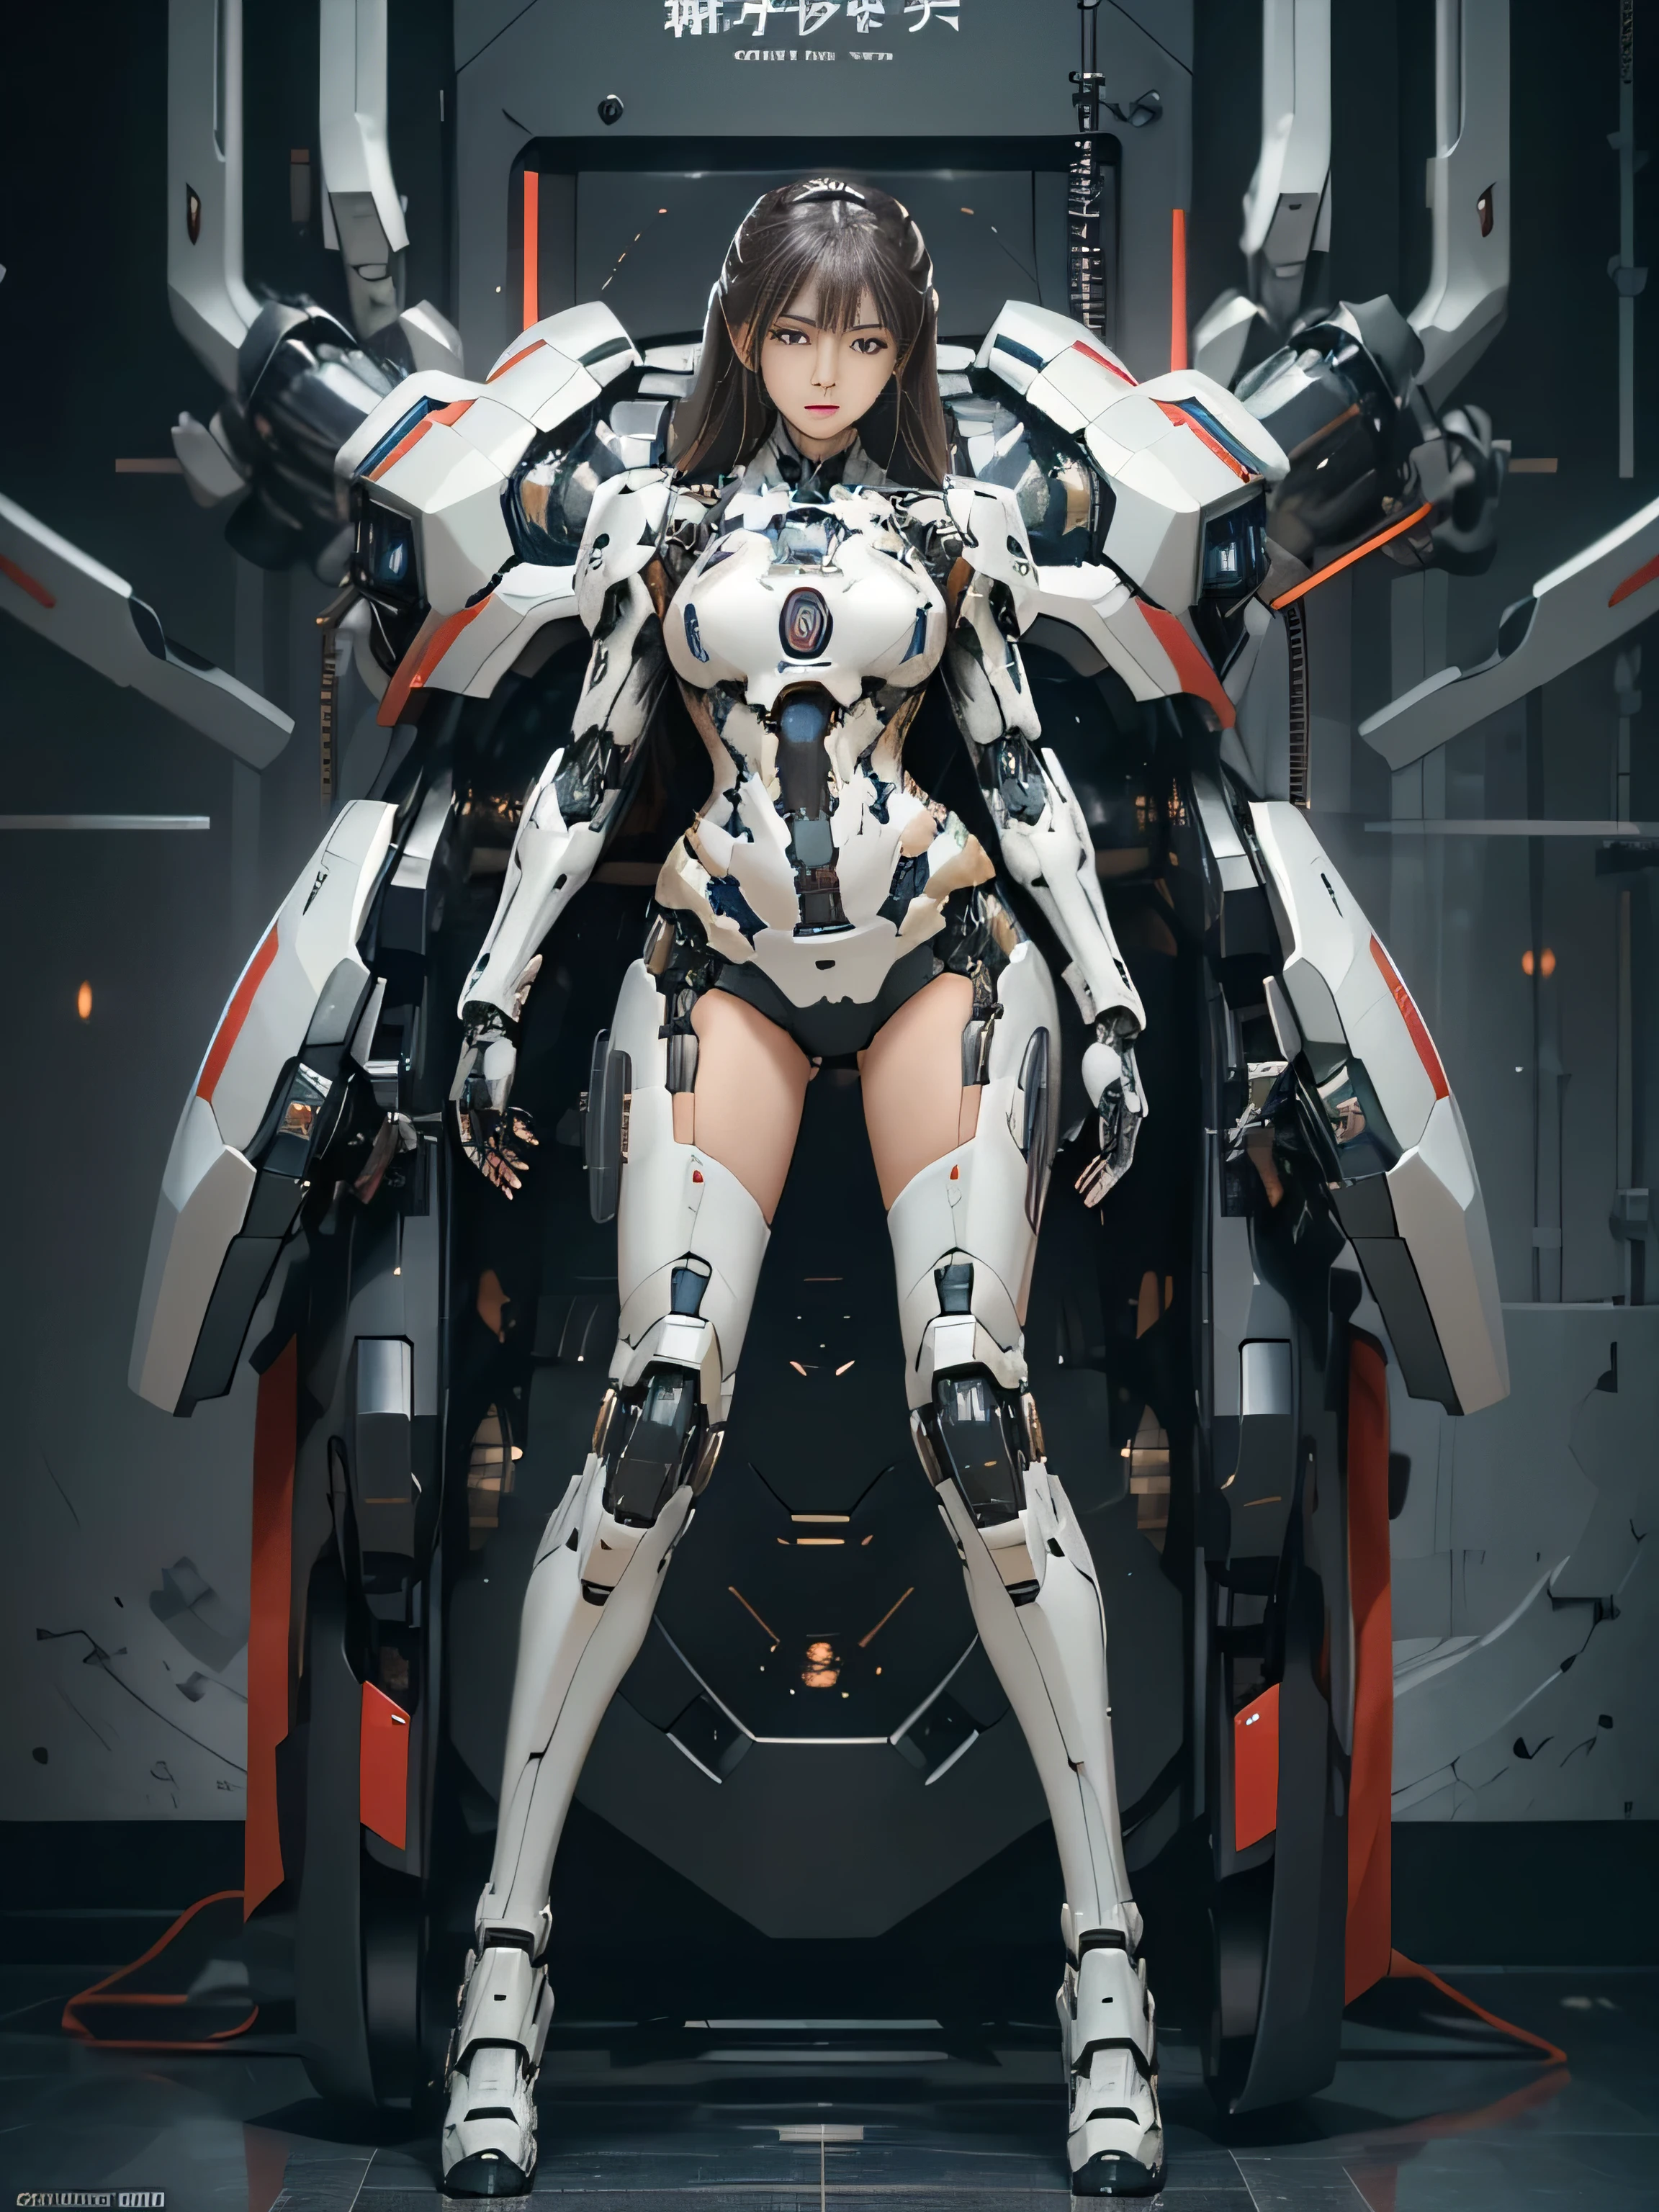 粗糙的皮肤, 超詳細, 高級細節, 高品質, 最高品質, 高解析度, 1080P, 硬碟, 美麗的,(戰爭機器),美麗的 cyborg woman,機甲機器人女孩,對戰模式,機甲少女,She is wearing a futuristic 戰爭機器,全身照